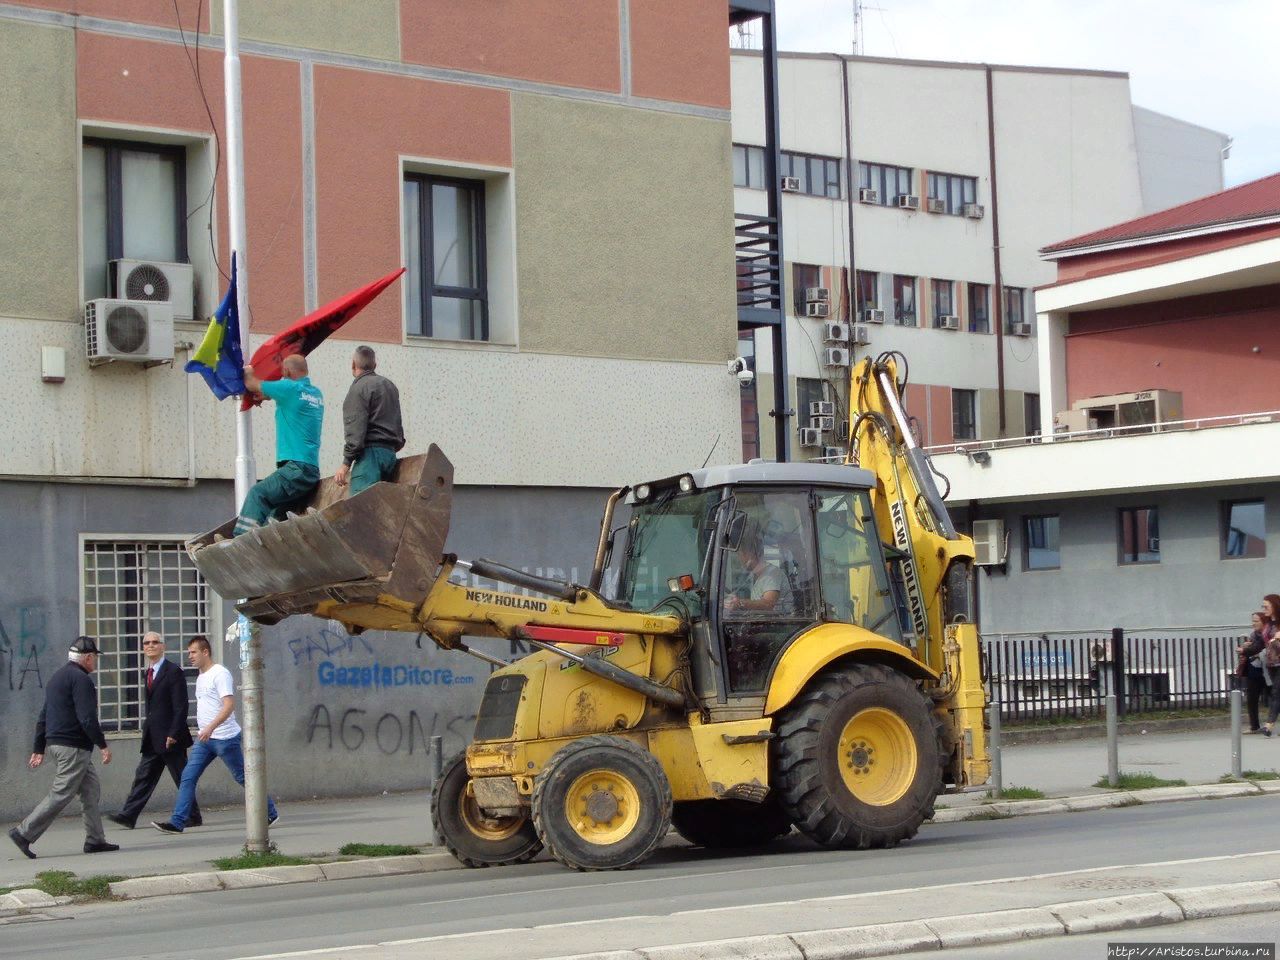 Добро пожаловать в Косово или посторонним вход воспрещен Приштина, Республика Косово